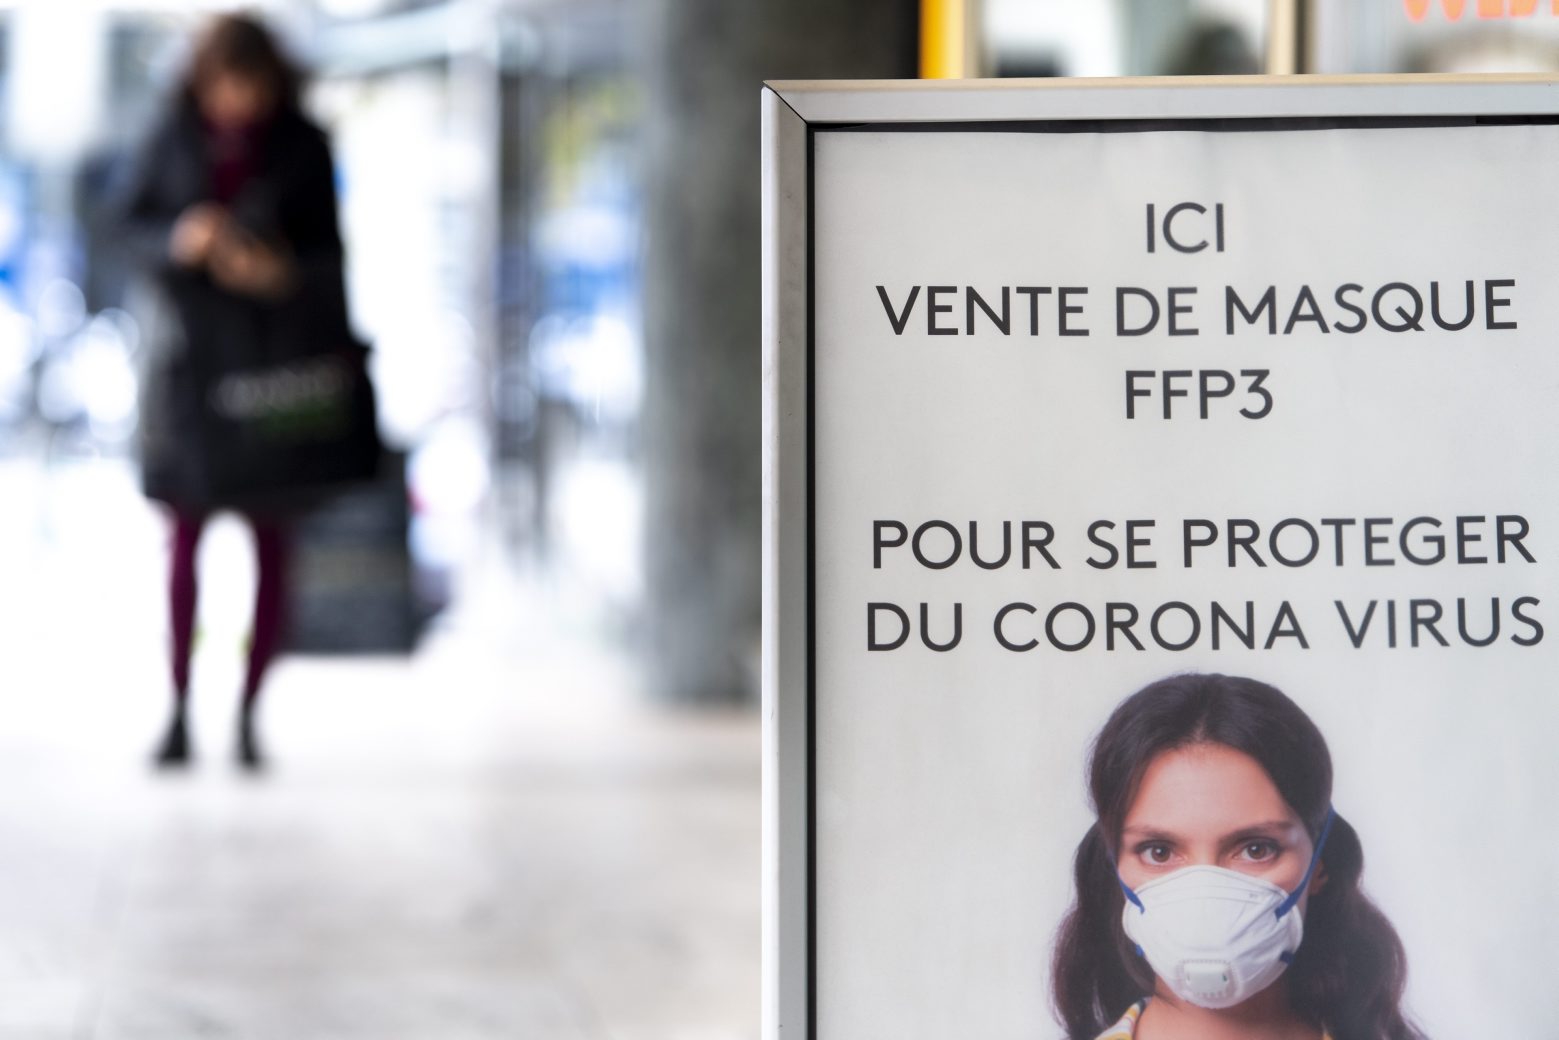 Un panneaun indiquant "Ici vente de masque FFP3 pour se proteger du corona virus" photographie ce lundi 9 mars 2020 devant une pharmacie en ville de Lausanne. (KEYSTONE/Laurent Gillieron) SUISSE MASQUE CORONAVIRUS